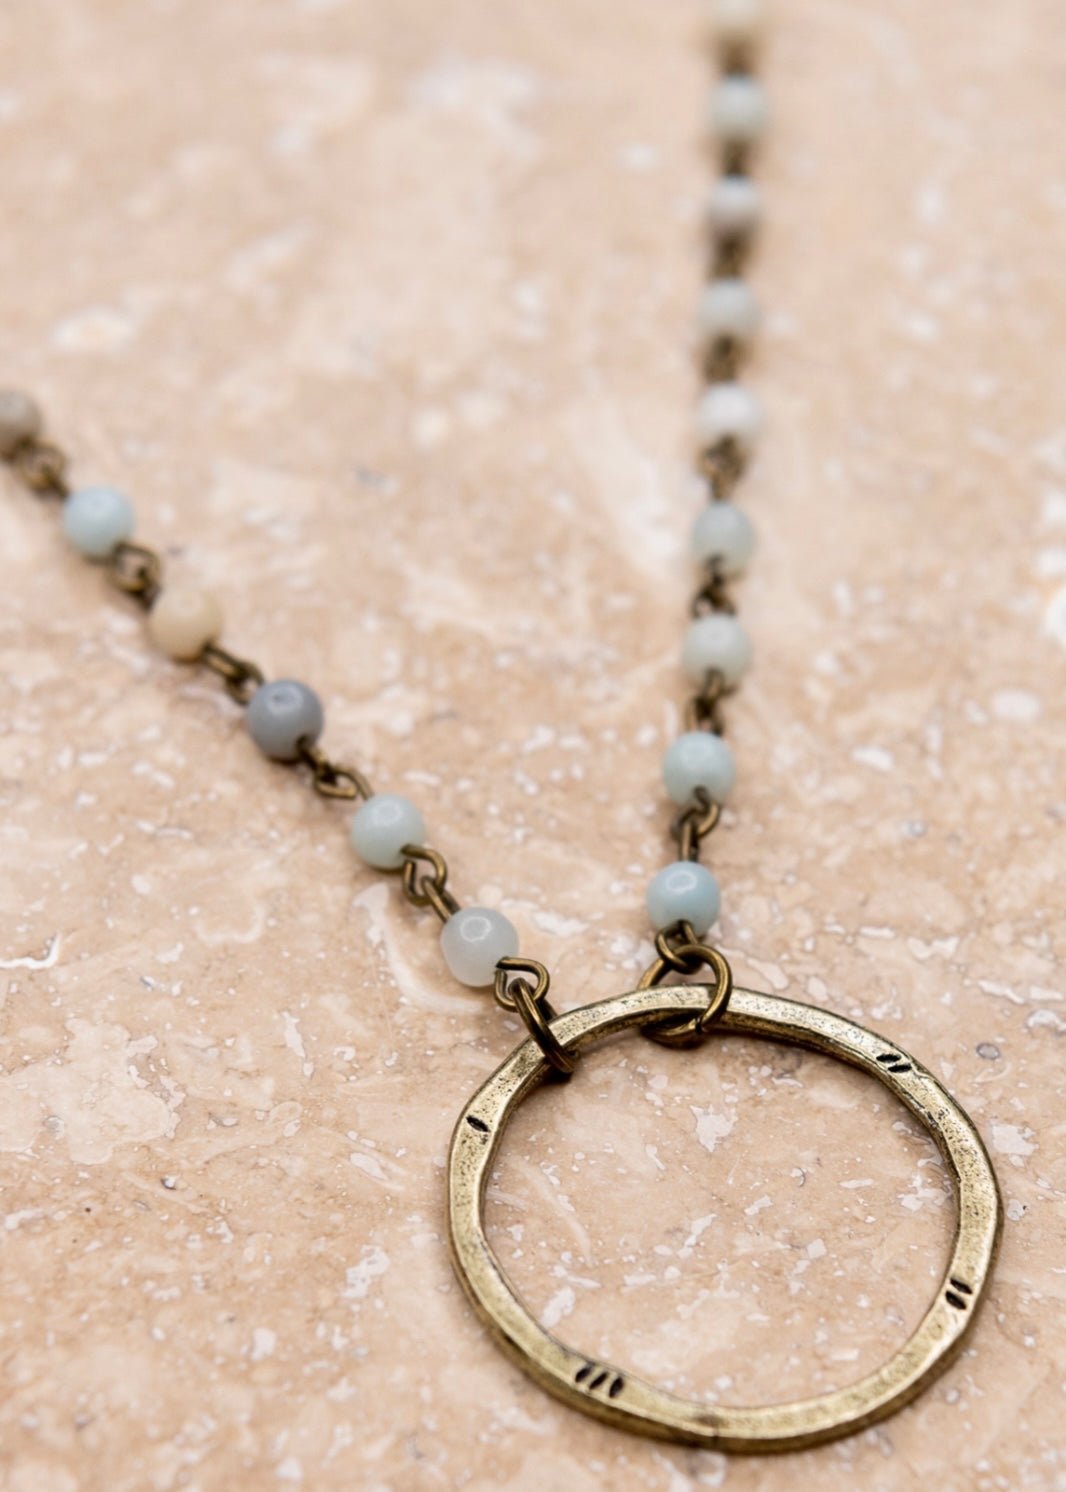 Nova Necklace - Amazonite - Necklaces - Jimberly's Boutique